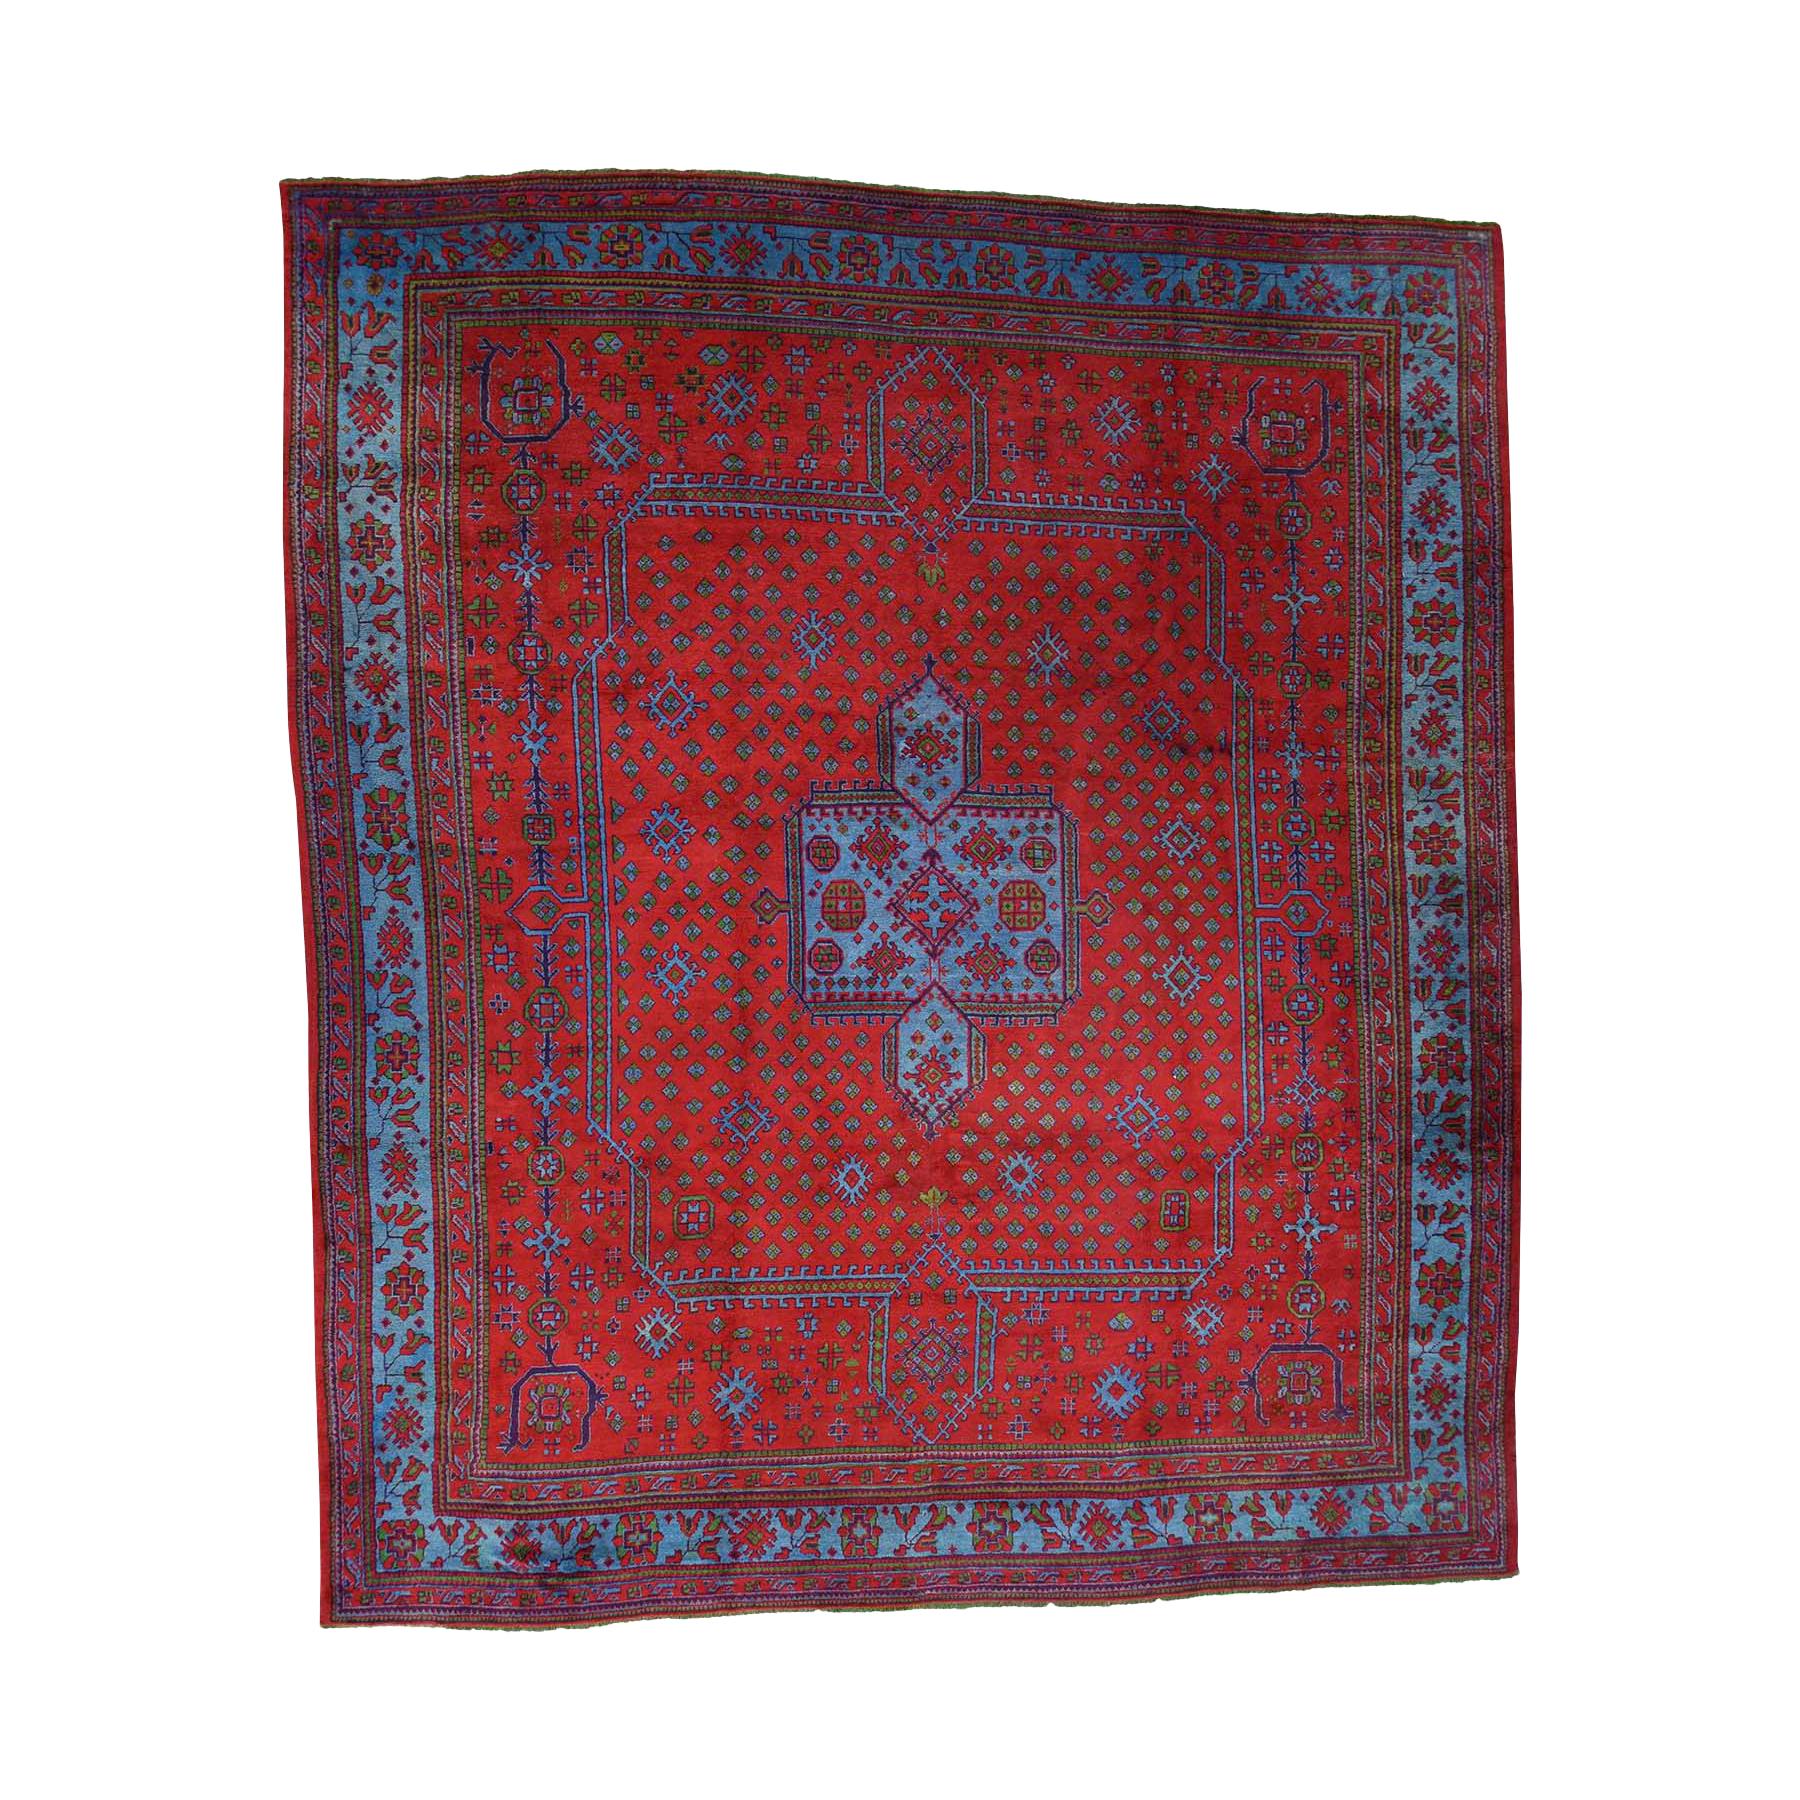 1920s Vintage Turkish Oushak Rug, Huge Square Vivid Red For Sale